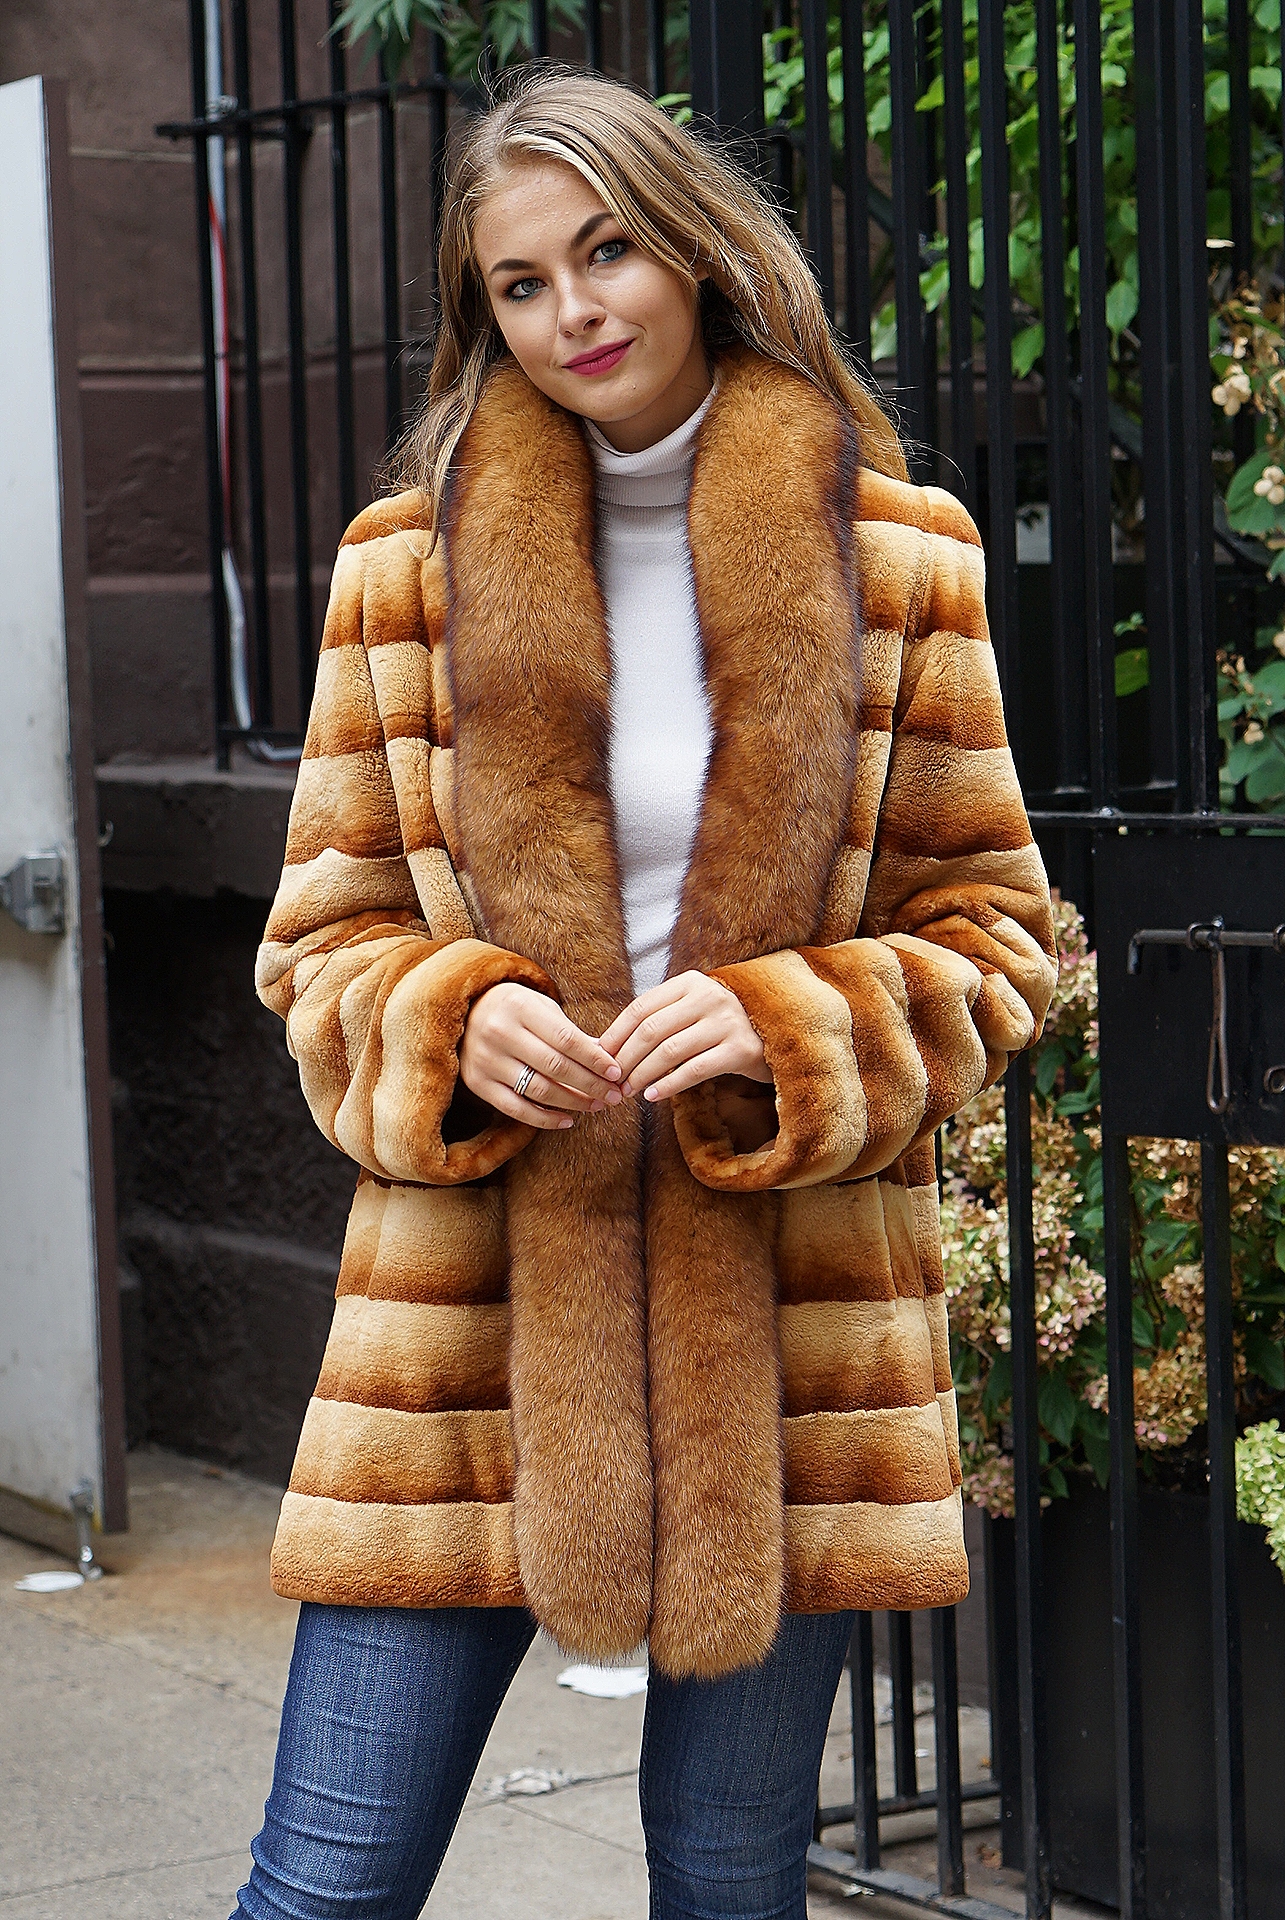 Mink fur coats